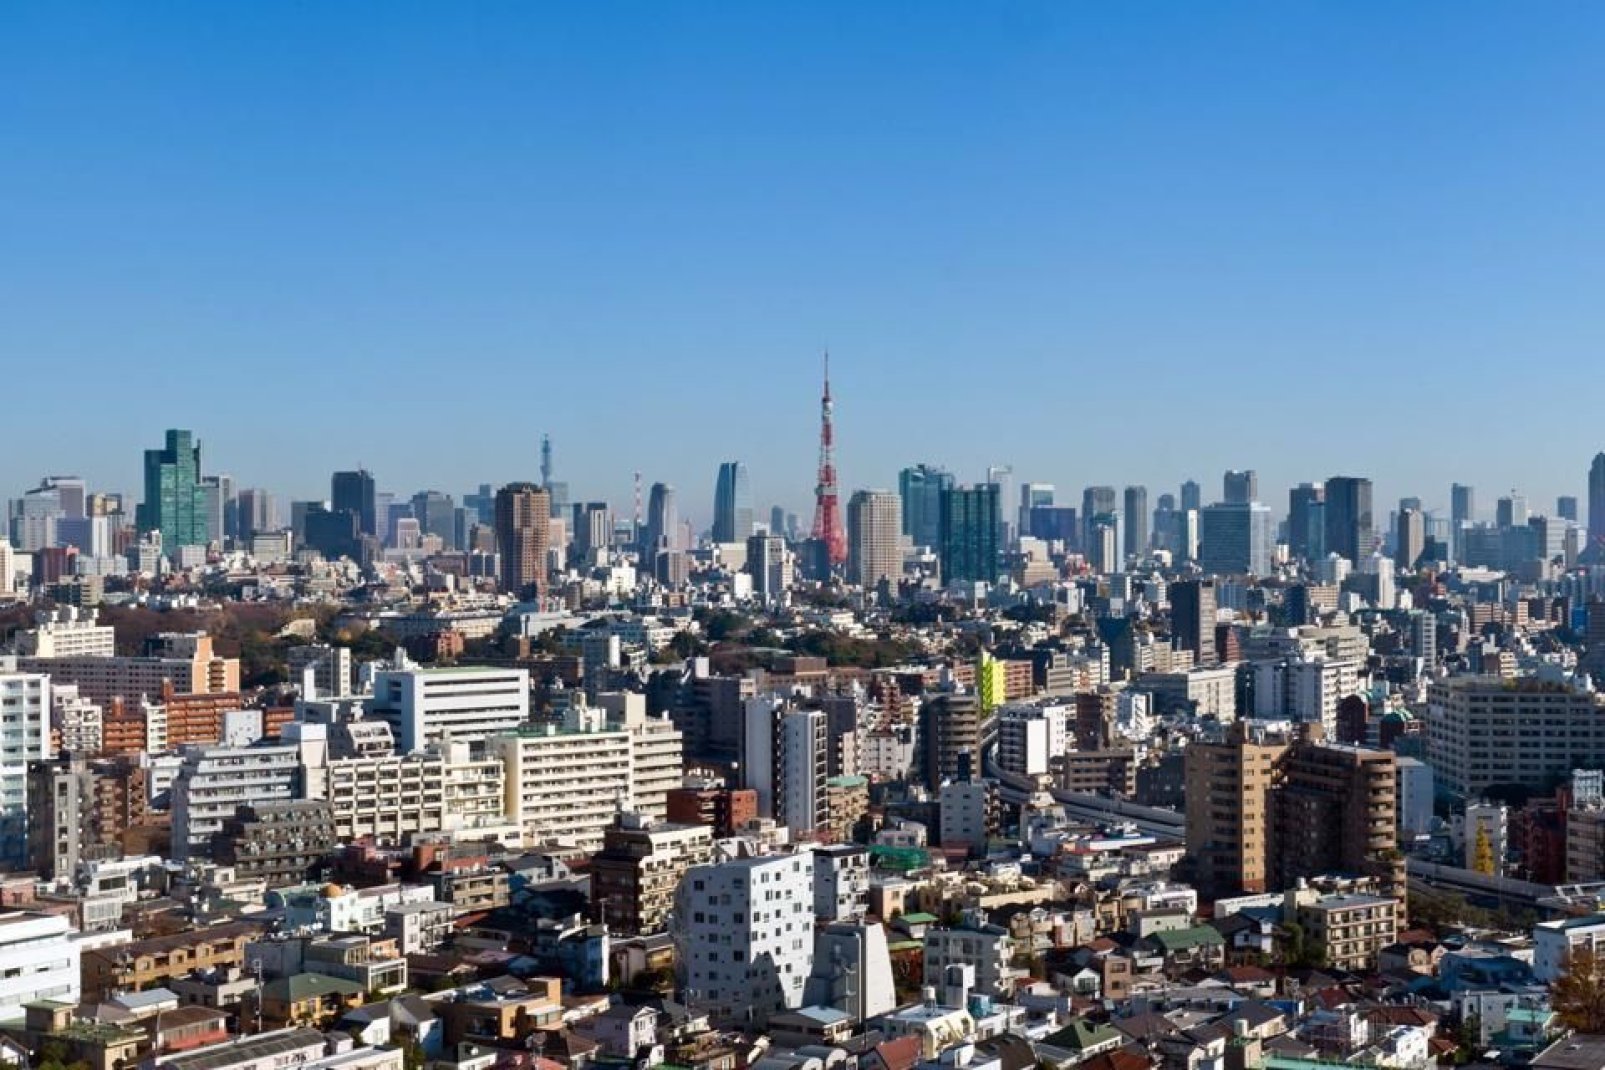 Tokyo colpisce per i suopi immensi grattacieli ultramoderni e per le sue mille luci